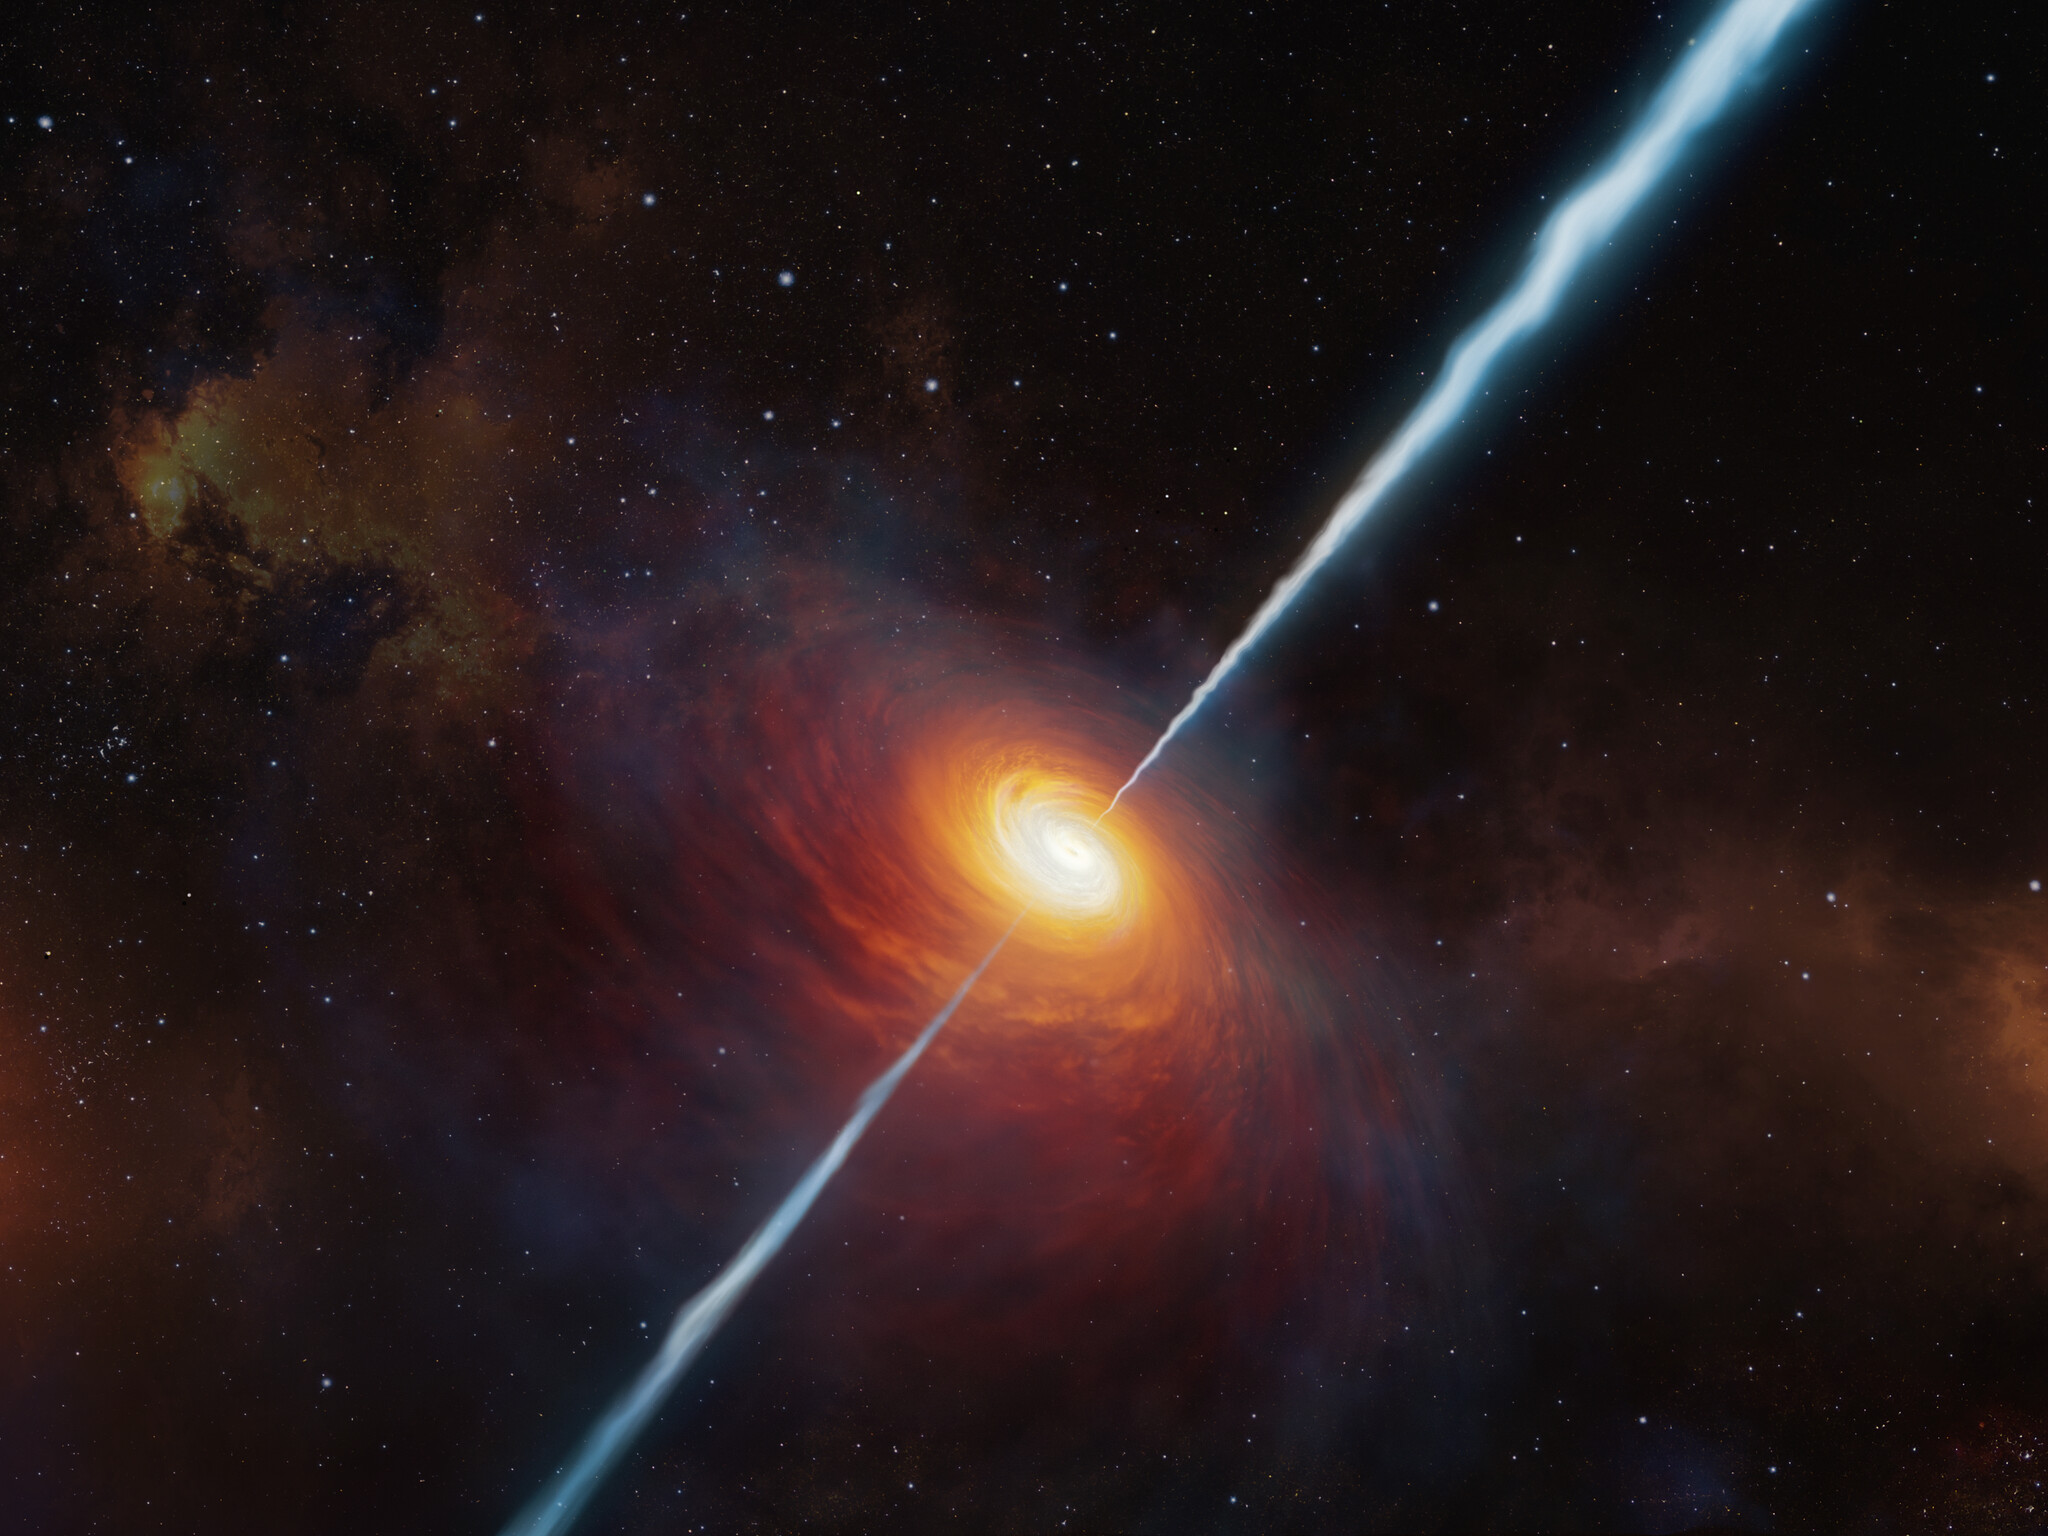 Cette vue artiste montre à quoi devait ressembler le lointain quasar P172+18 et ses jets radio. À ce jour (début 2021), c'est le quasar le plus lointain avec des jets radio jamais trouvé. Il a été étudié grâce au Very Large Telescope de l'ESO. Il est si éloigné que la lumière qui en provient a voyagé pendant environ 13 milliards d'années pour nous atteindre : nous le voyons tel qu'il était lorsque l'Univers n'avait que 780 millions d'années environ. © ESO, M. Kornmesser&nbsp;&nbsp;